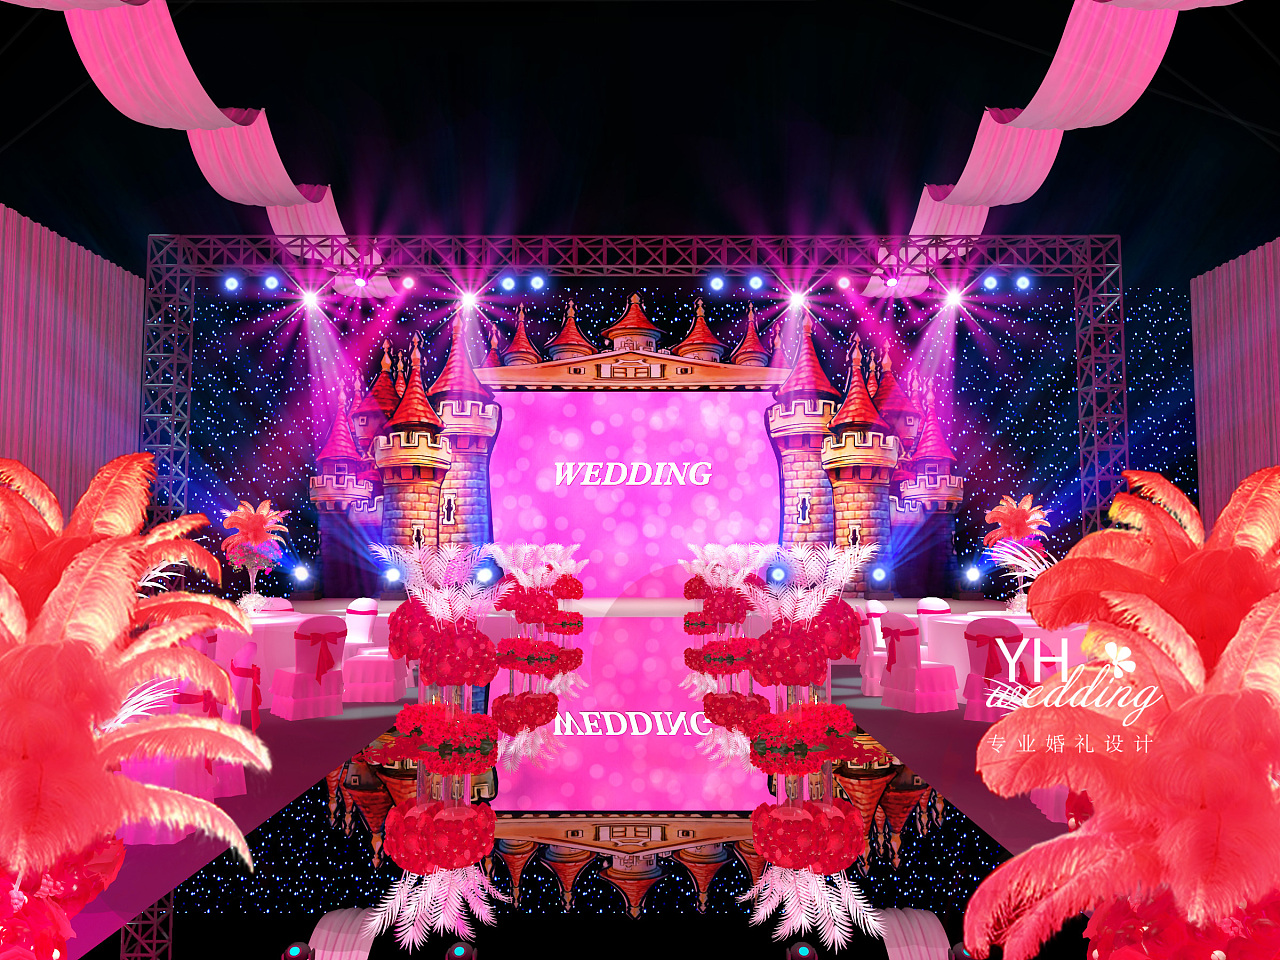 yhwedding婚礼设计:城堡羽毛婚礼舞台3d效果图